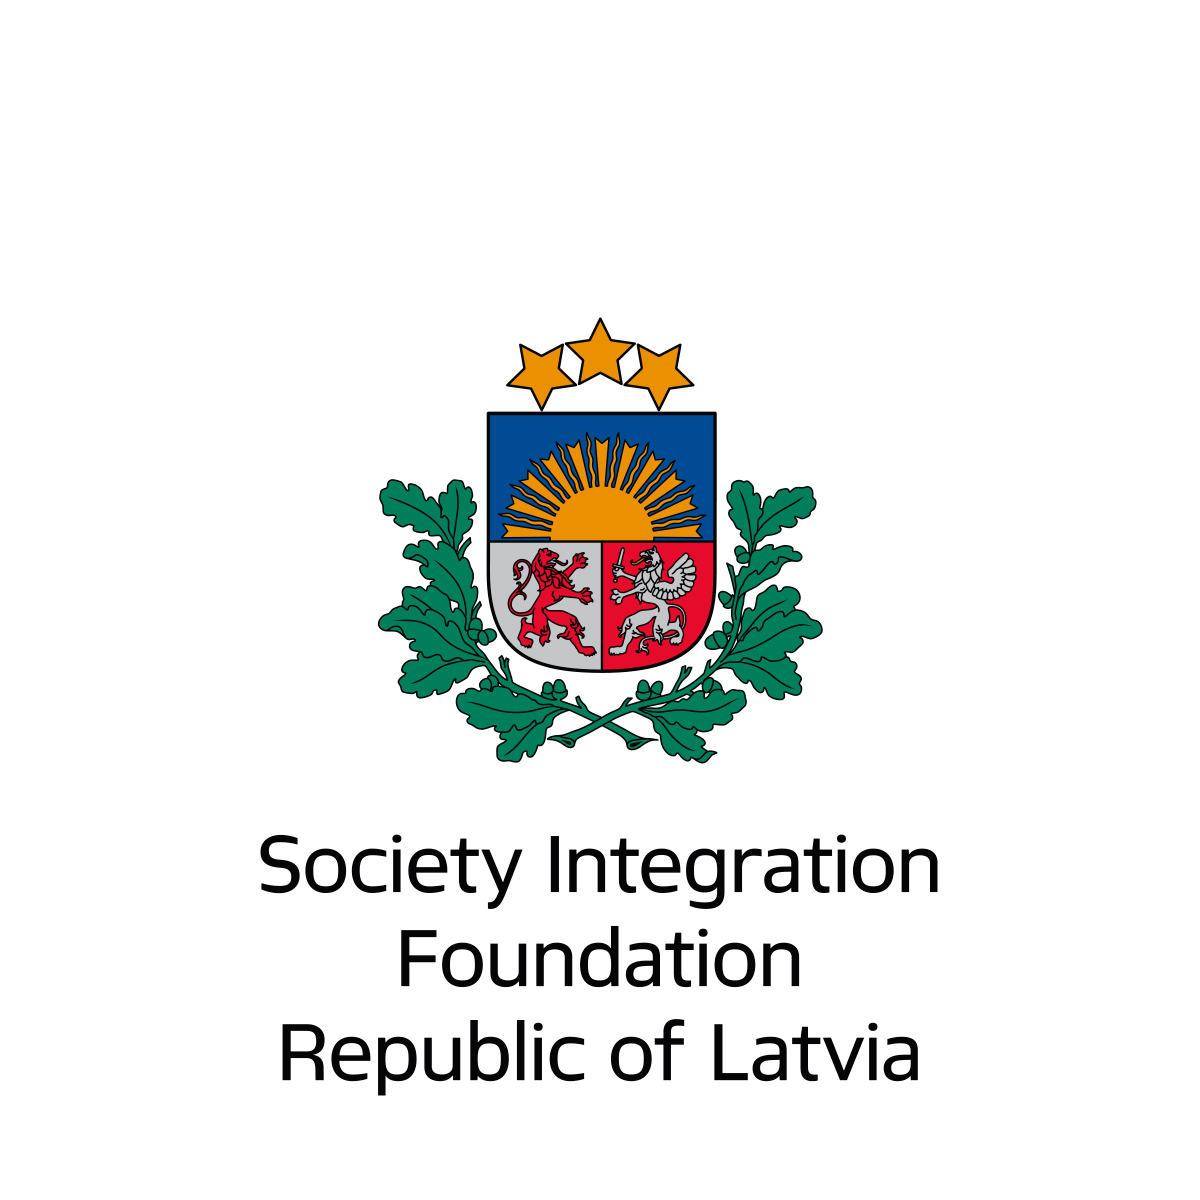 Sabiedrības Integrācijas Fonds logo